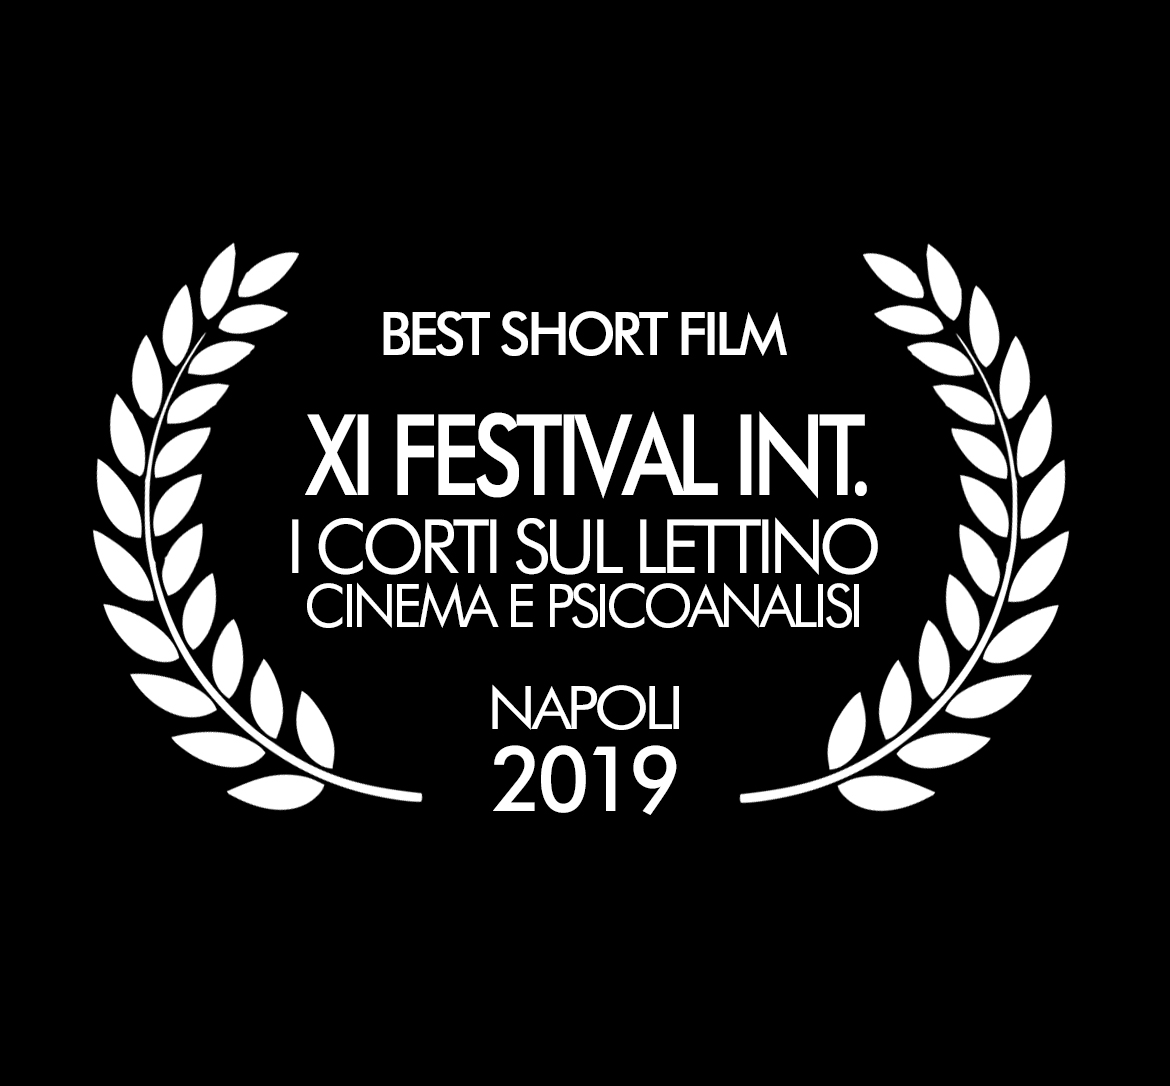 XI Festival Int. Cinema e Psicoanalisi Miglior Cortometraggio